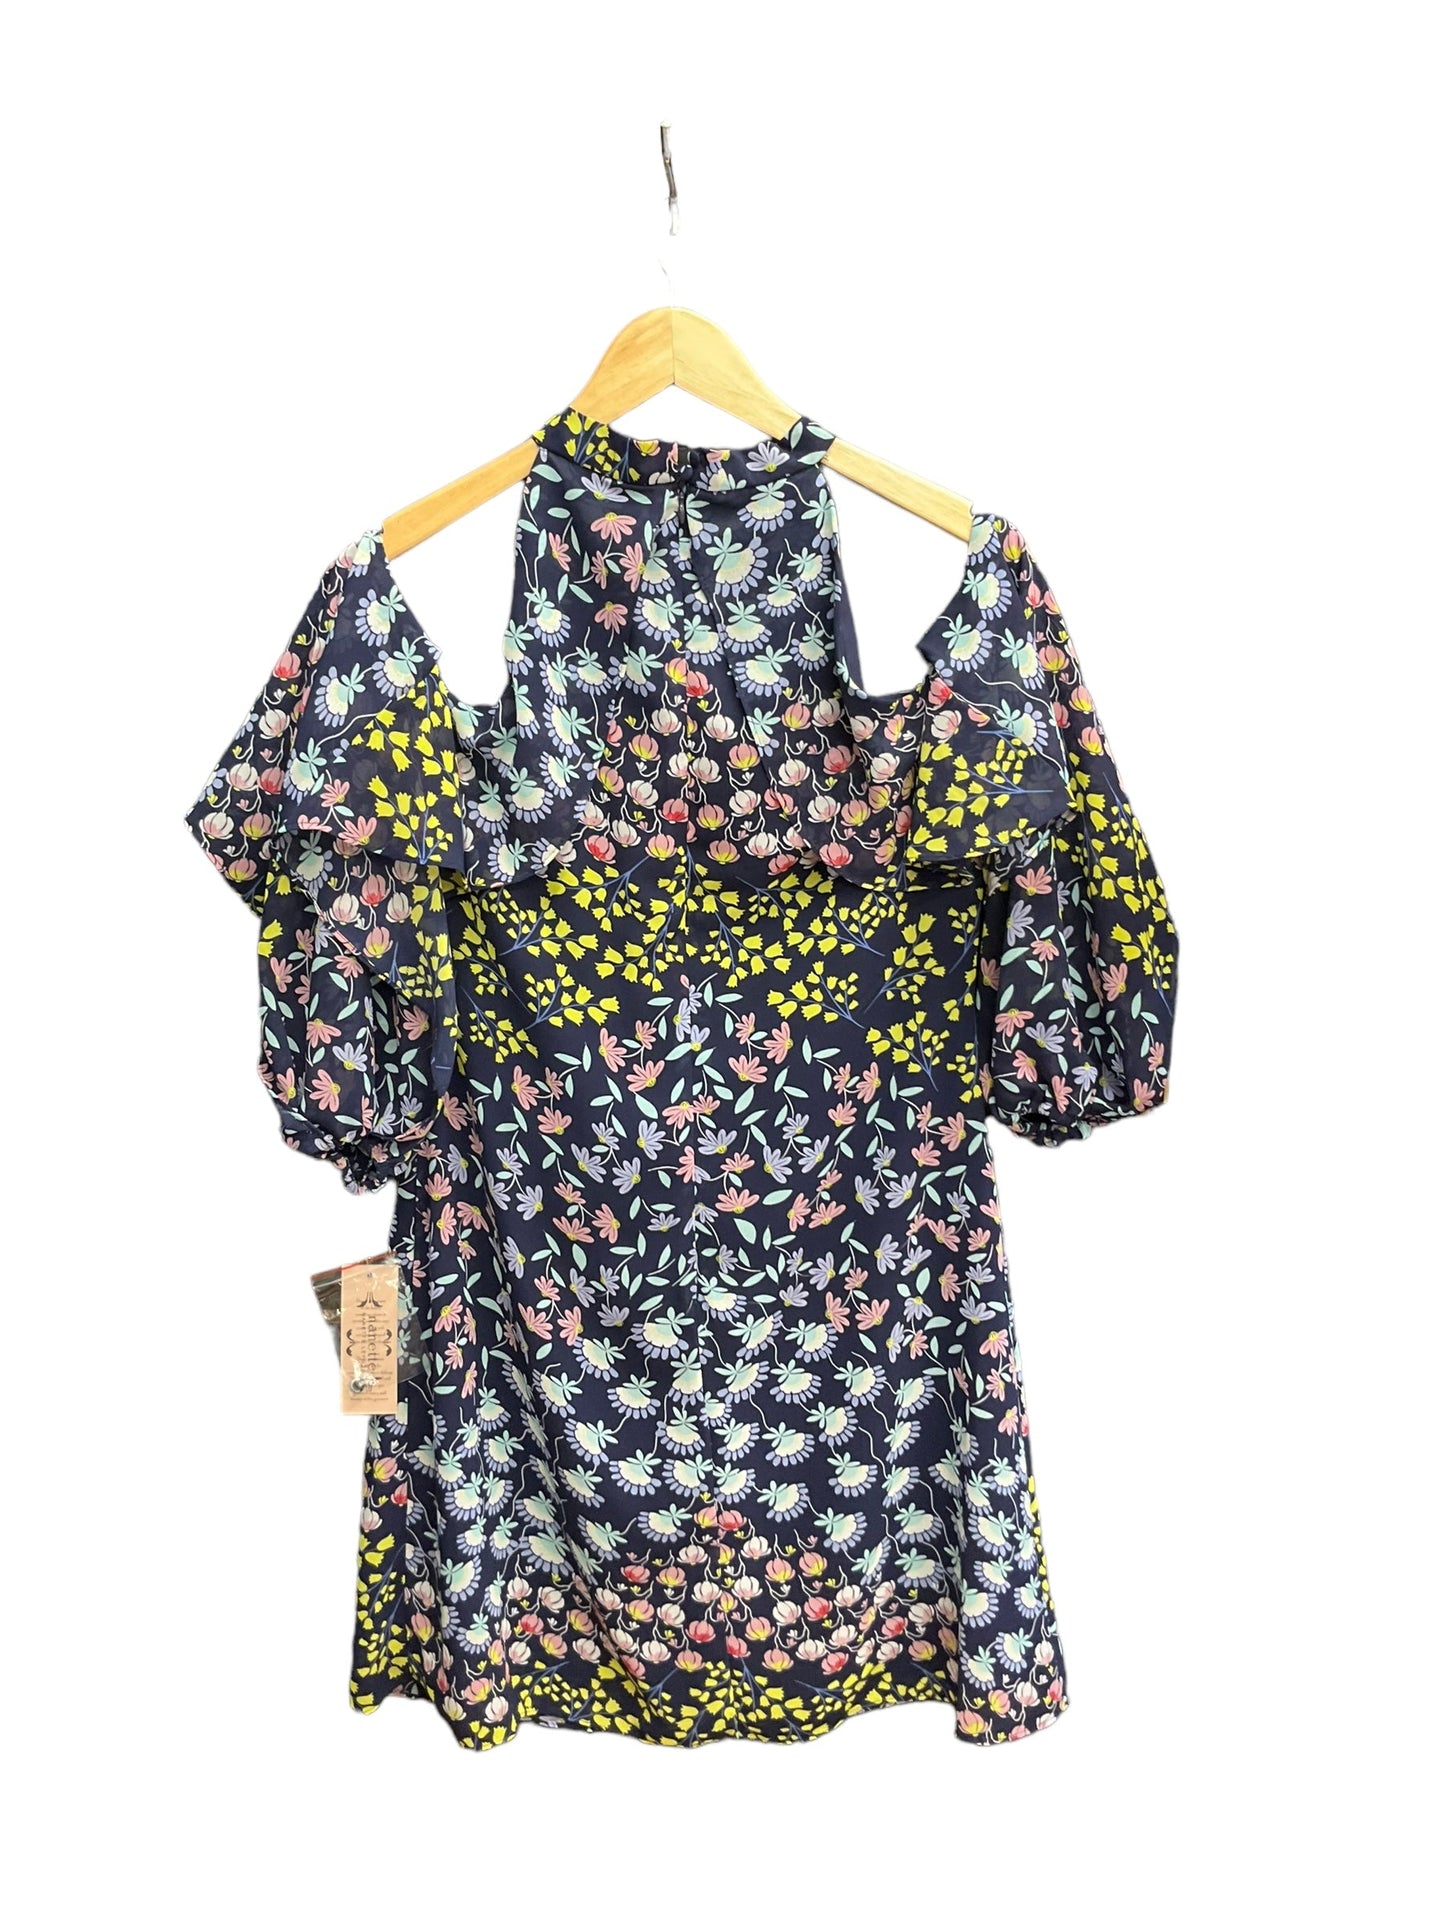 Floral Print Dress Casual Short Nanette Lepore, Size M